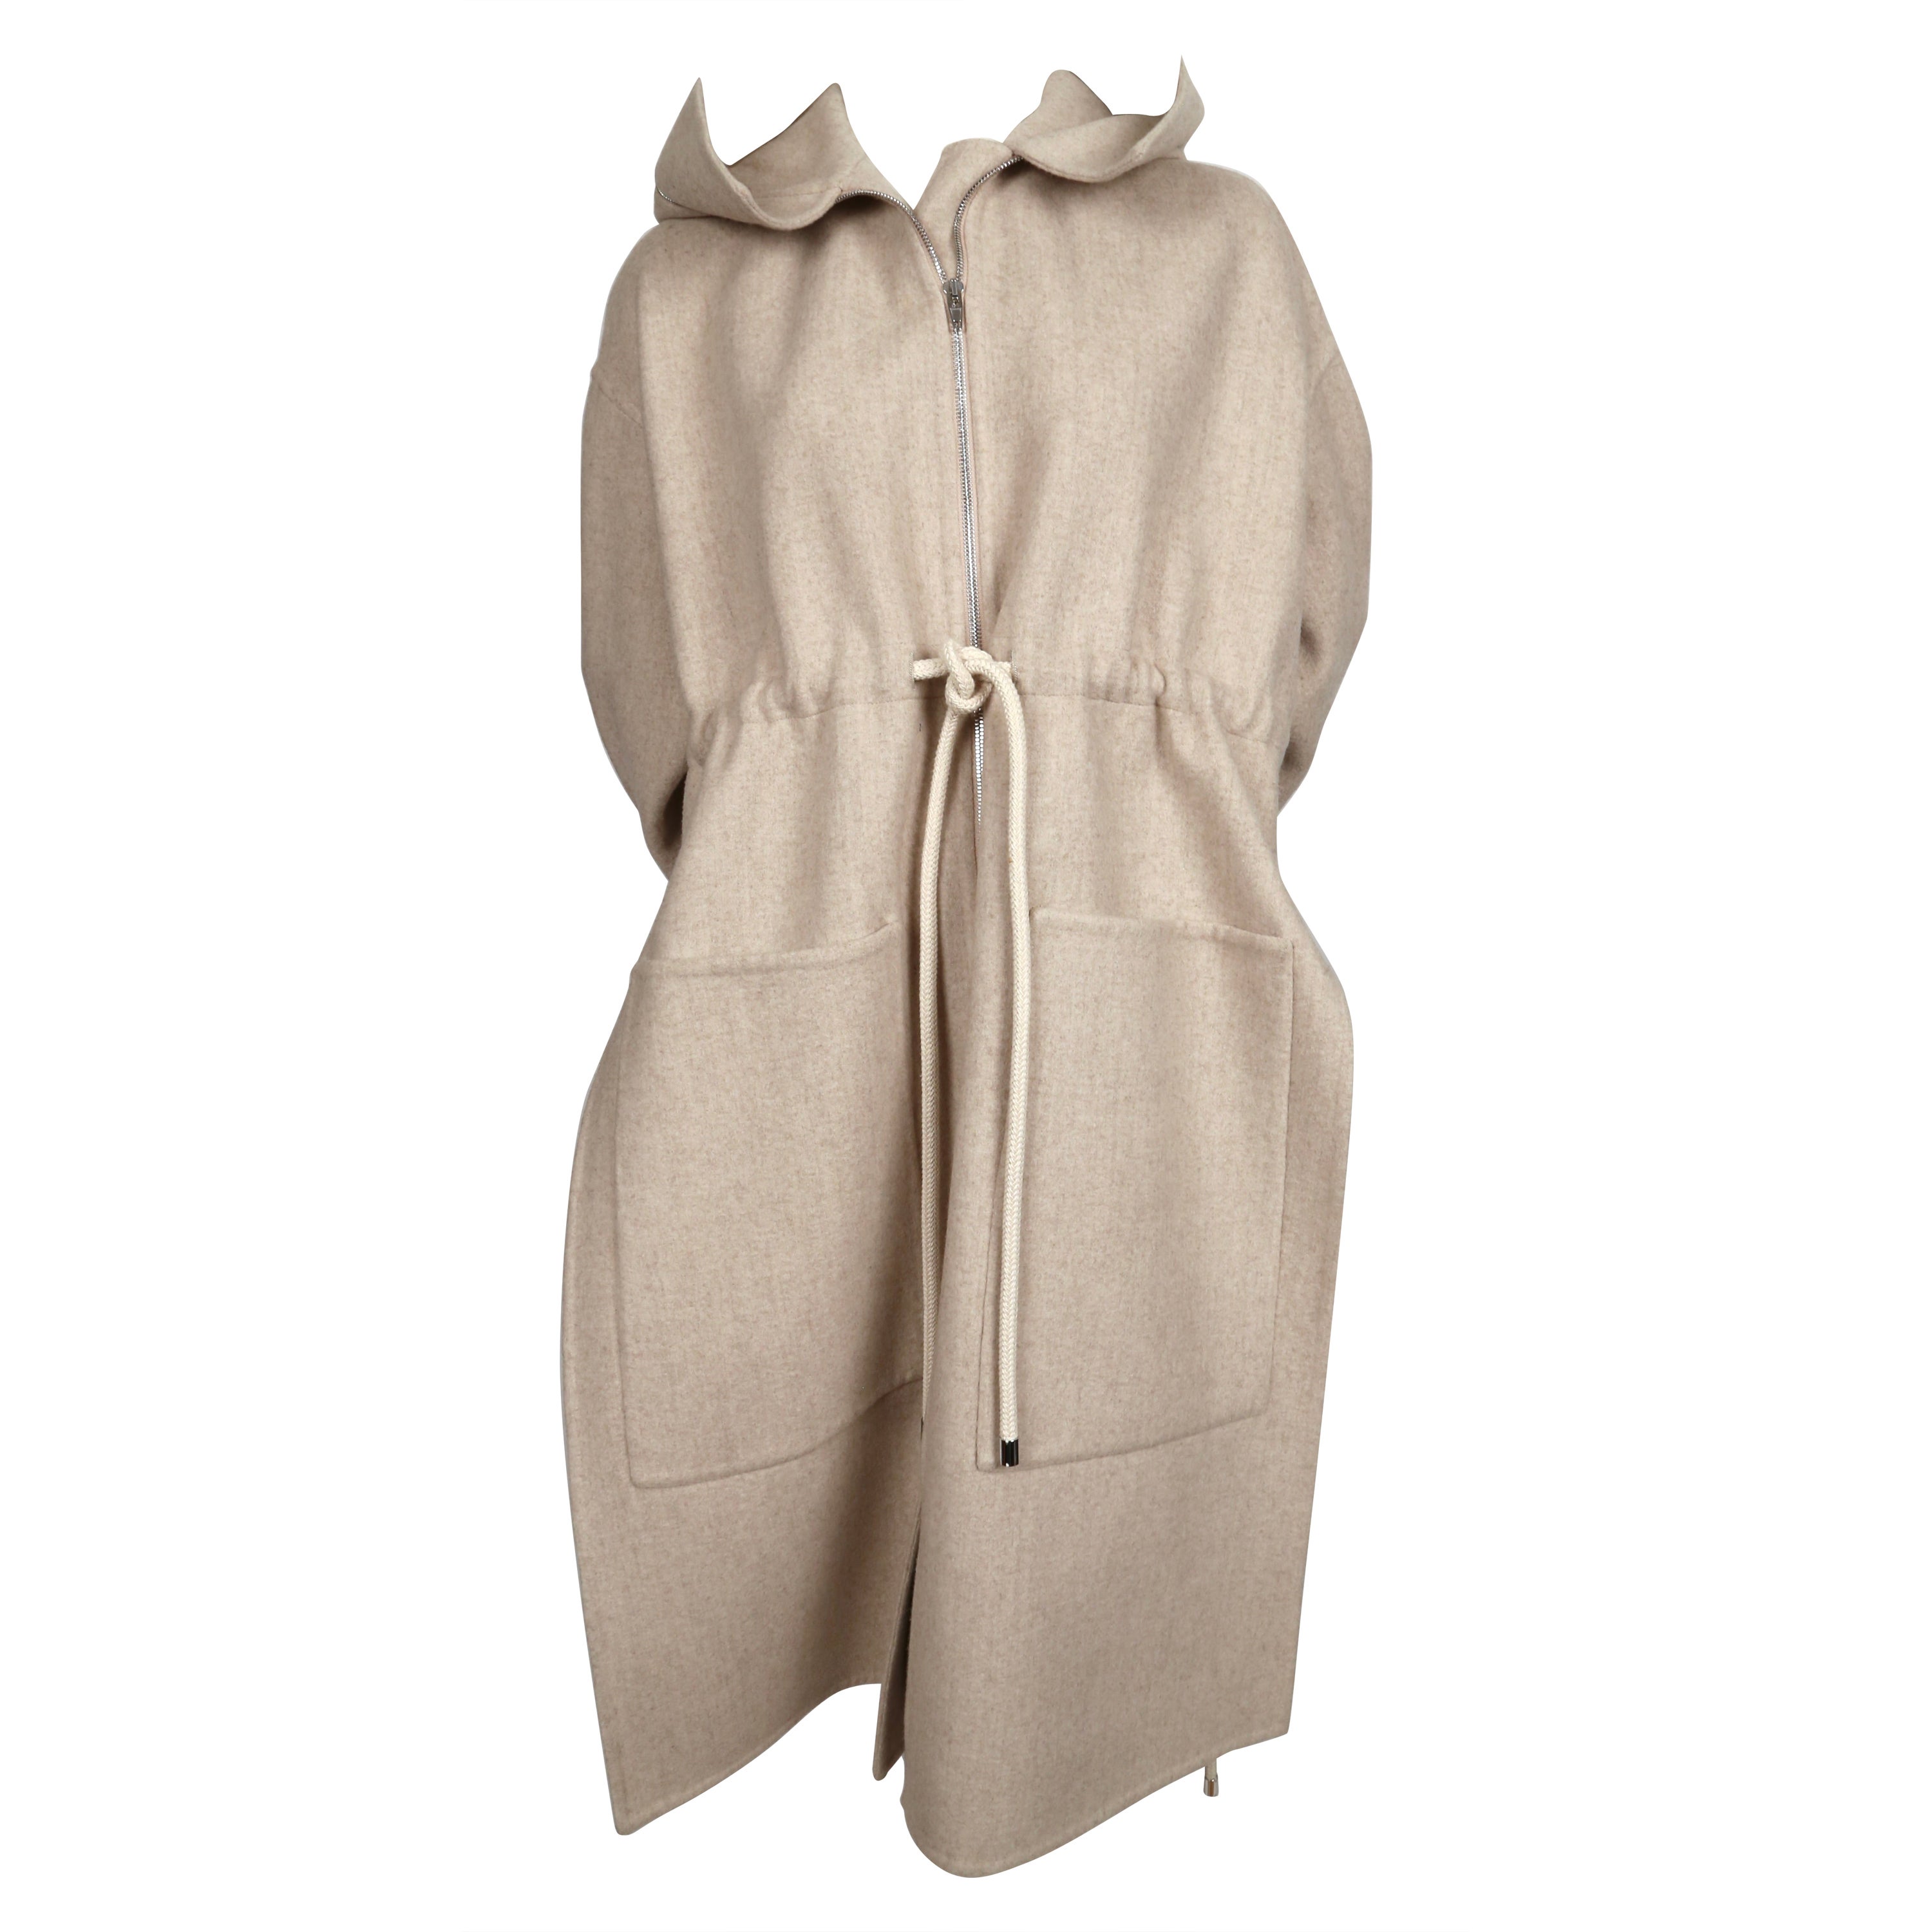 Manteau CÉLINE par PHOEBE PHILO en laine et cachemire couleur grège avec capuche - Resort 2016 en vente